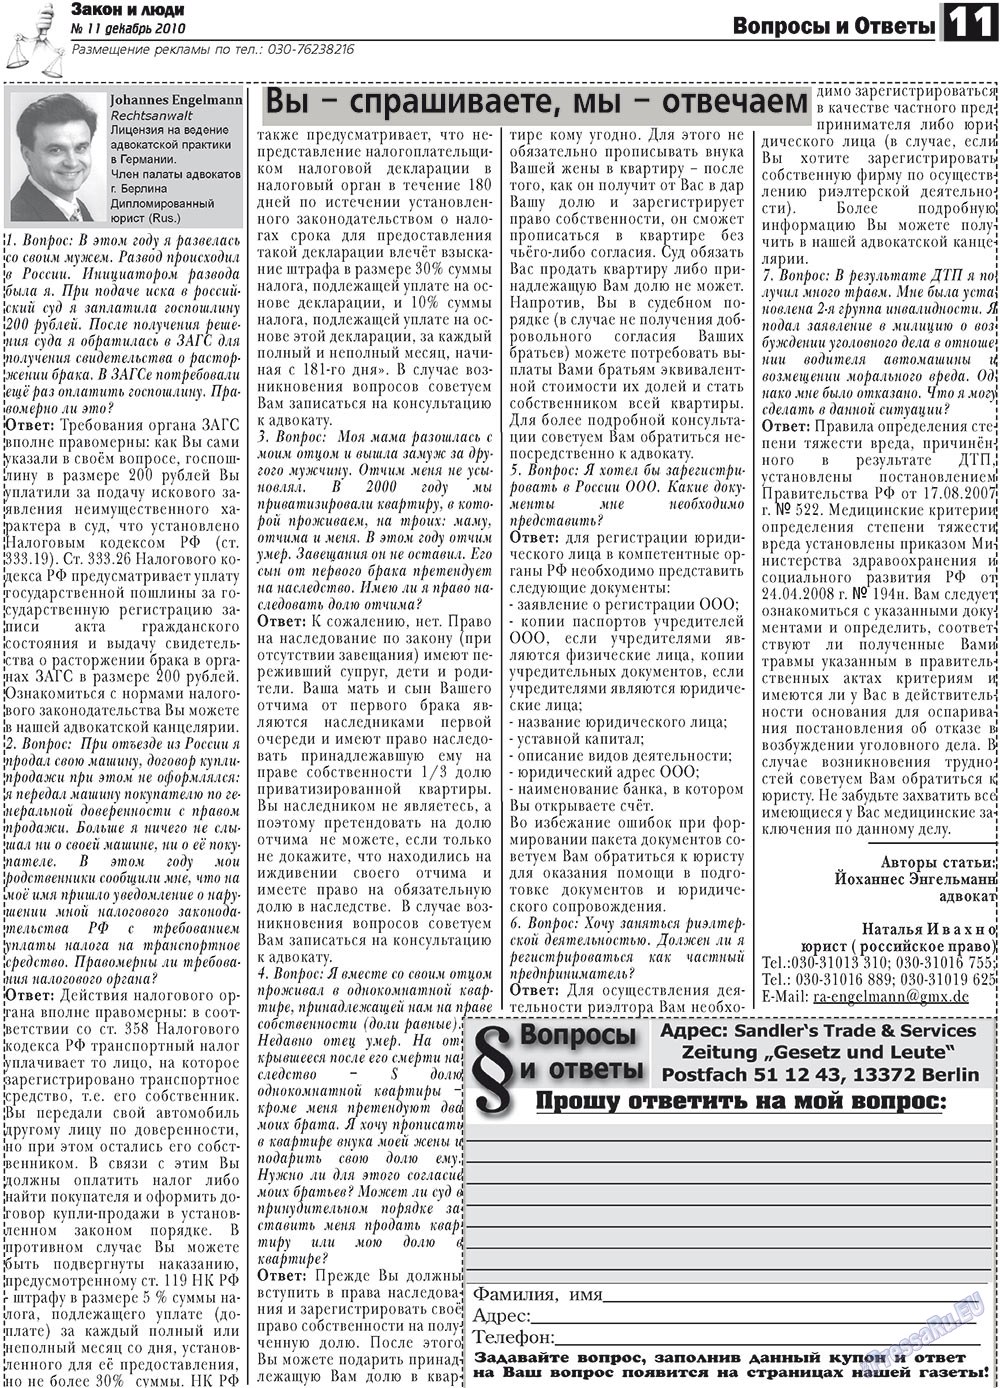 Закон и люди, газета. 2010 №11 стр.11